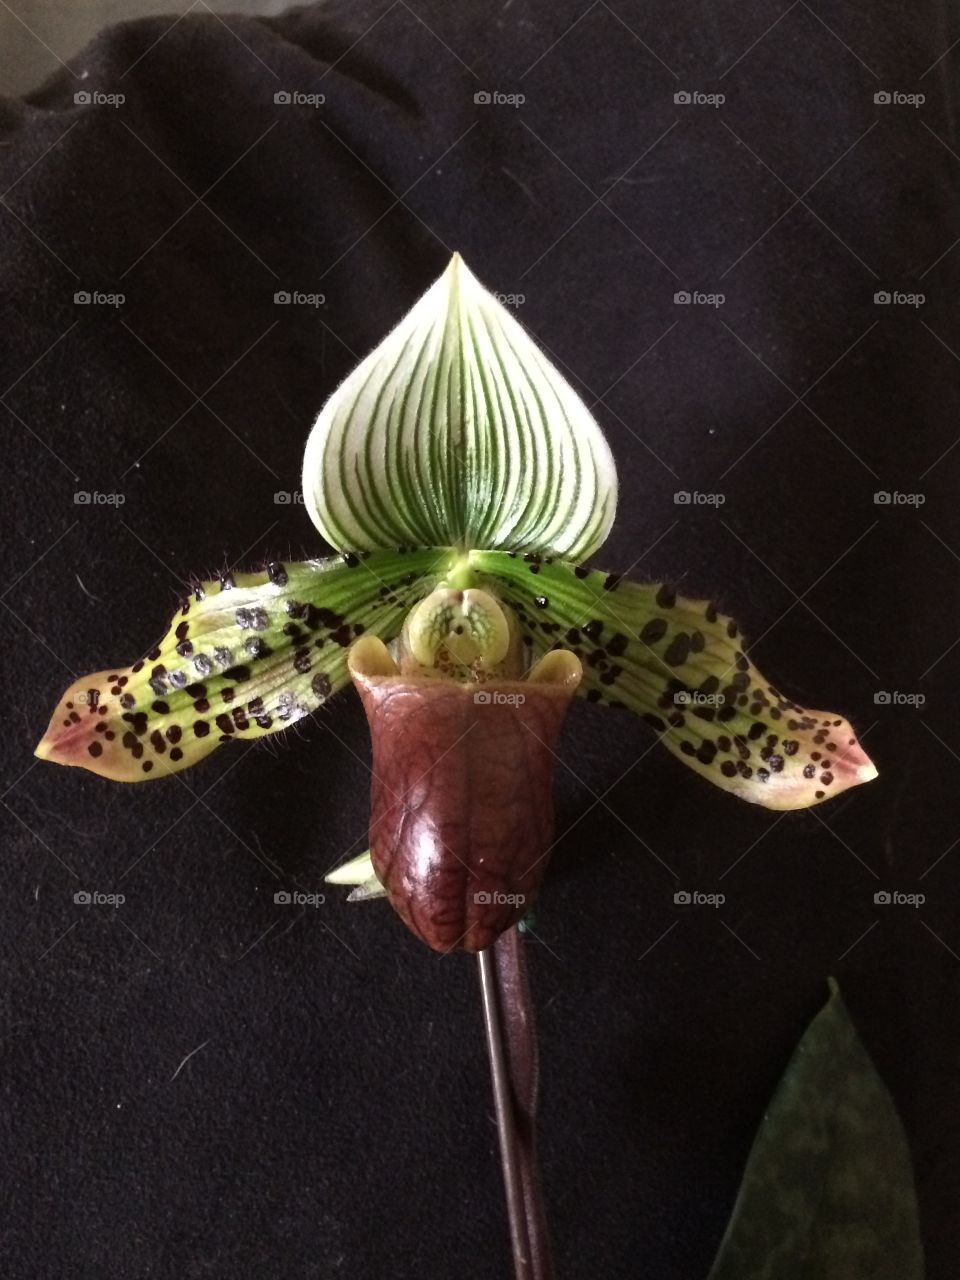 Orchid. Paphiopedilum in bloom